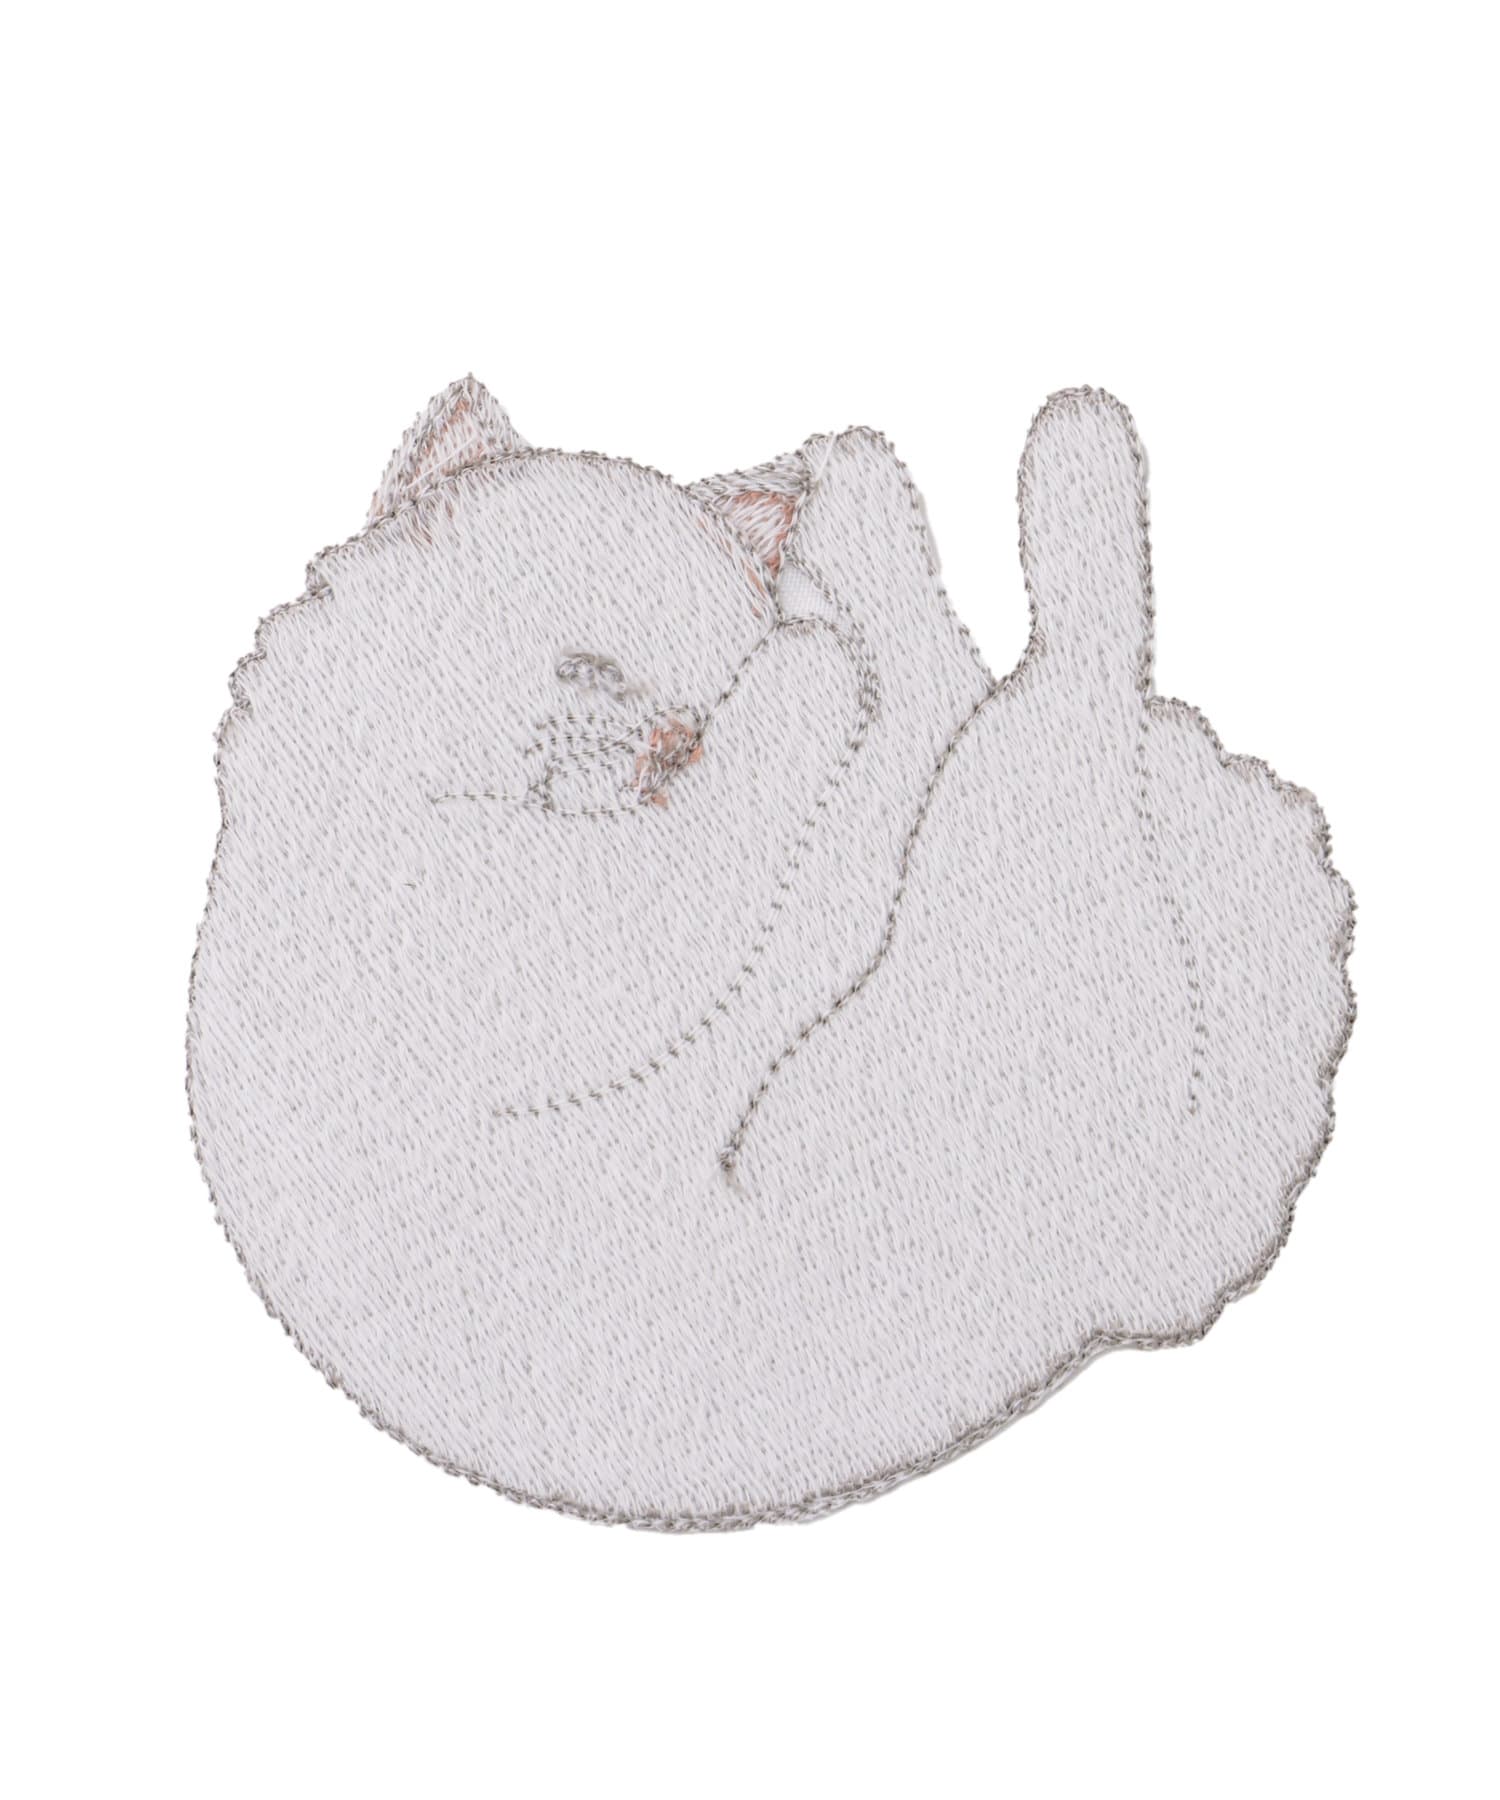 salut!(サリュ) 【cats】眠る猫のドイリー10cm（フサフサ）